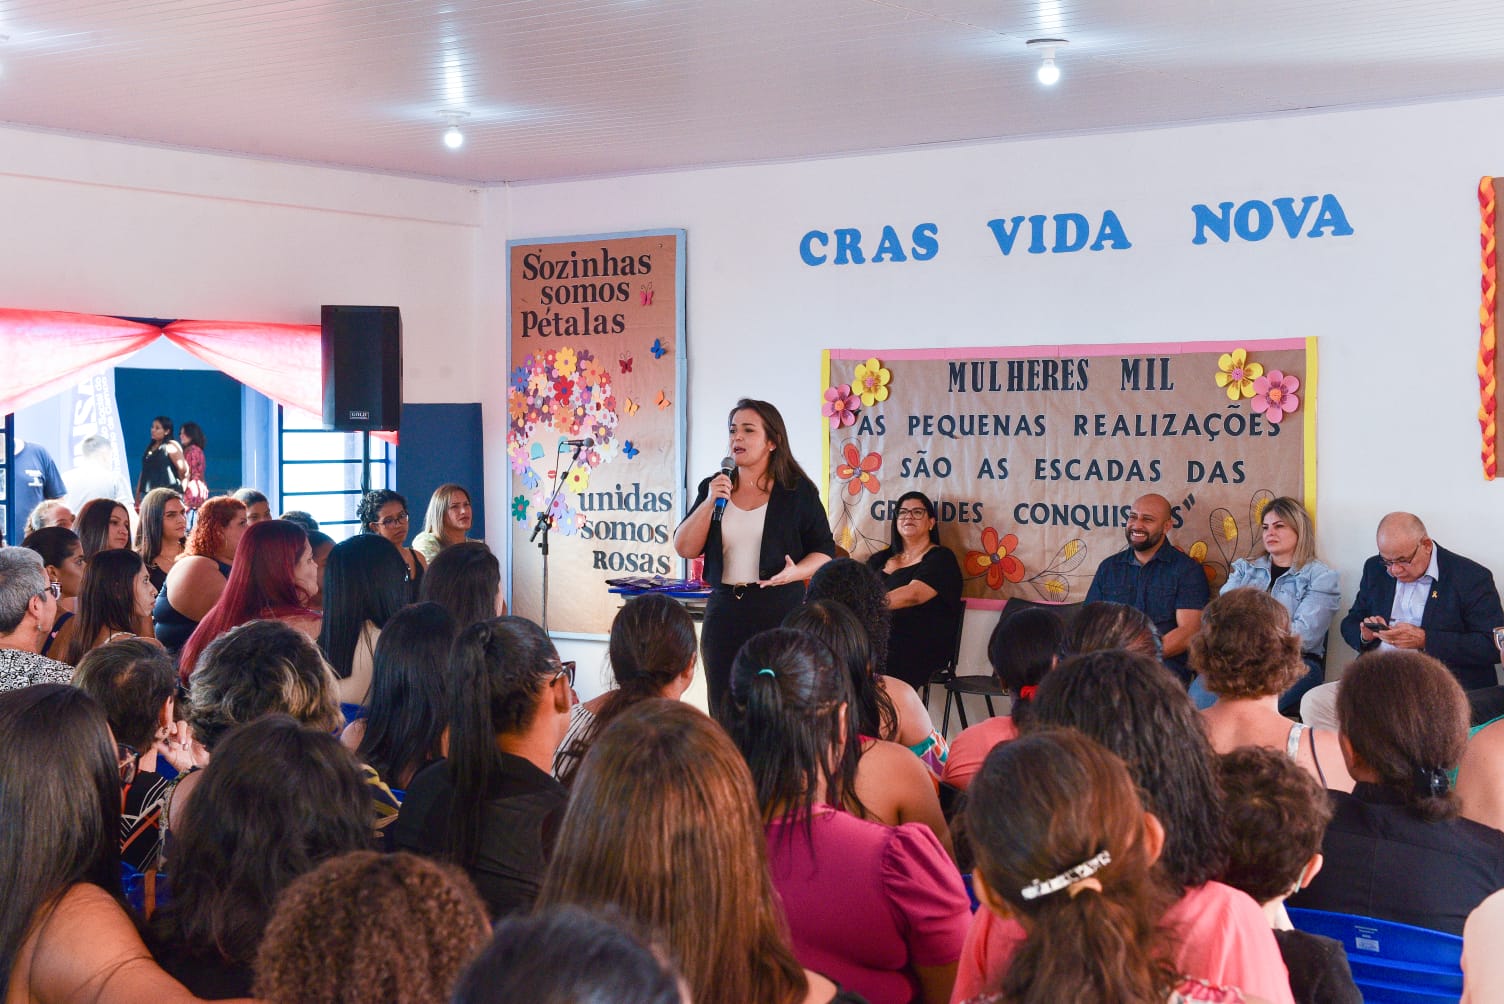 Cerimônia: Funsat encerra 1ª etapa do Programa Mulheres Mil no Cras Vida Nova